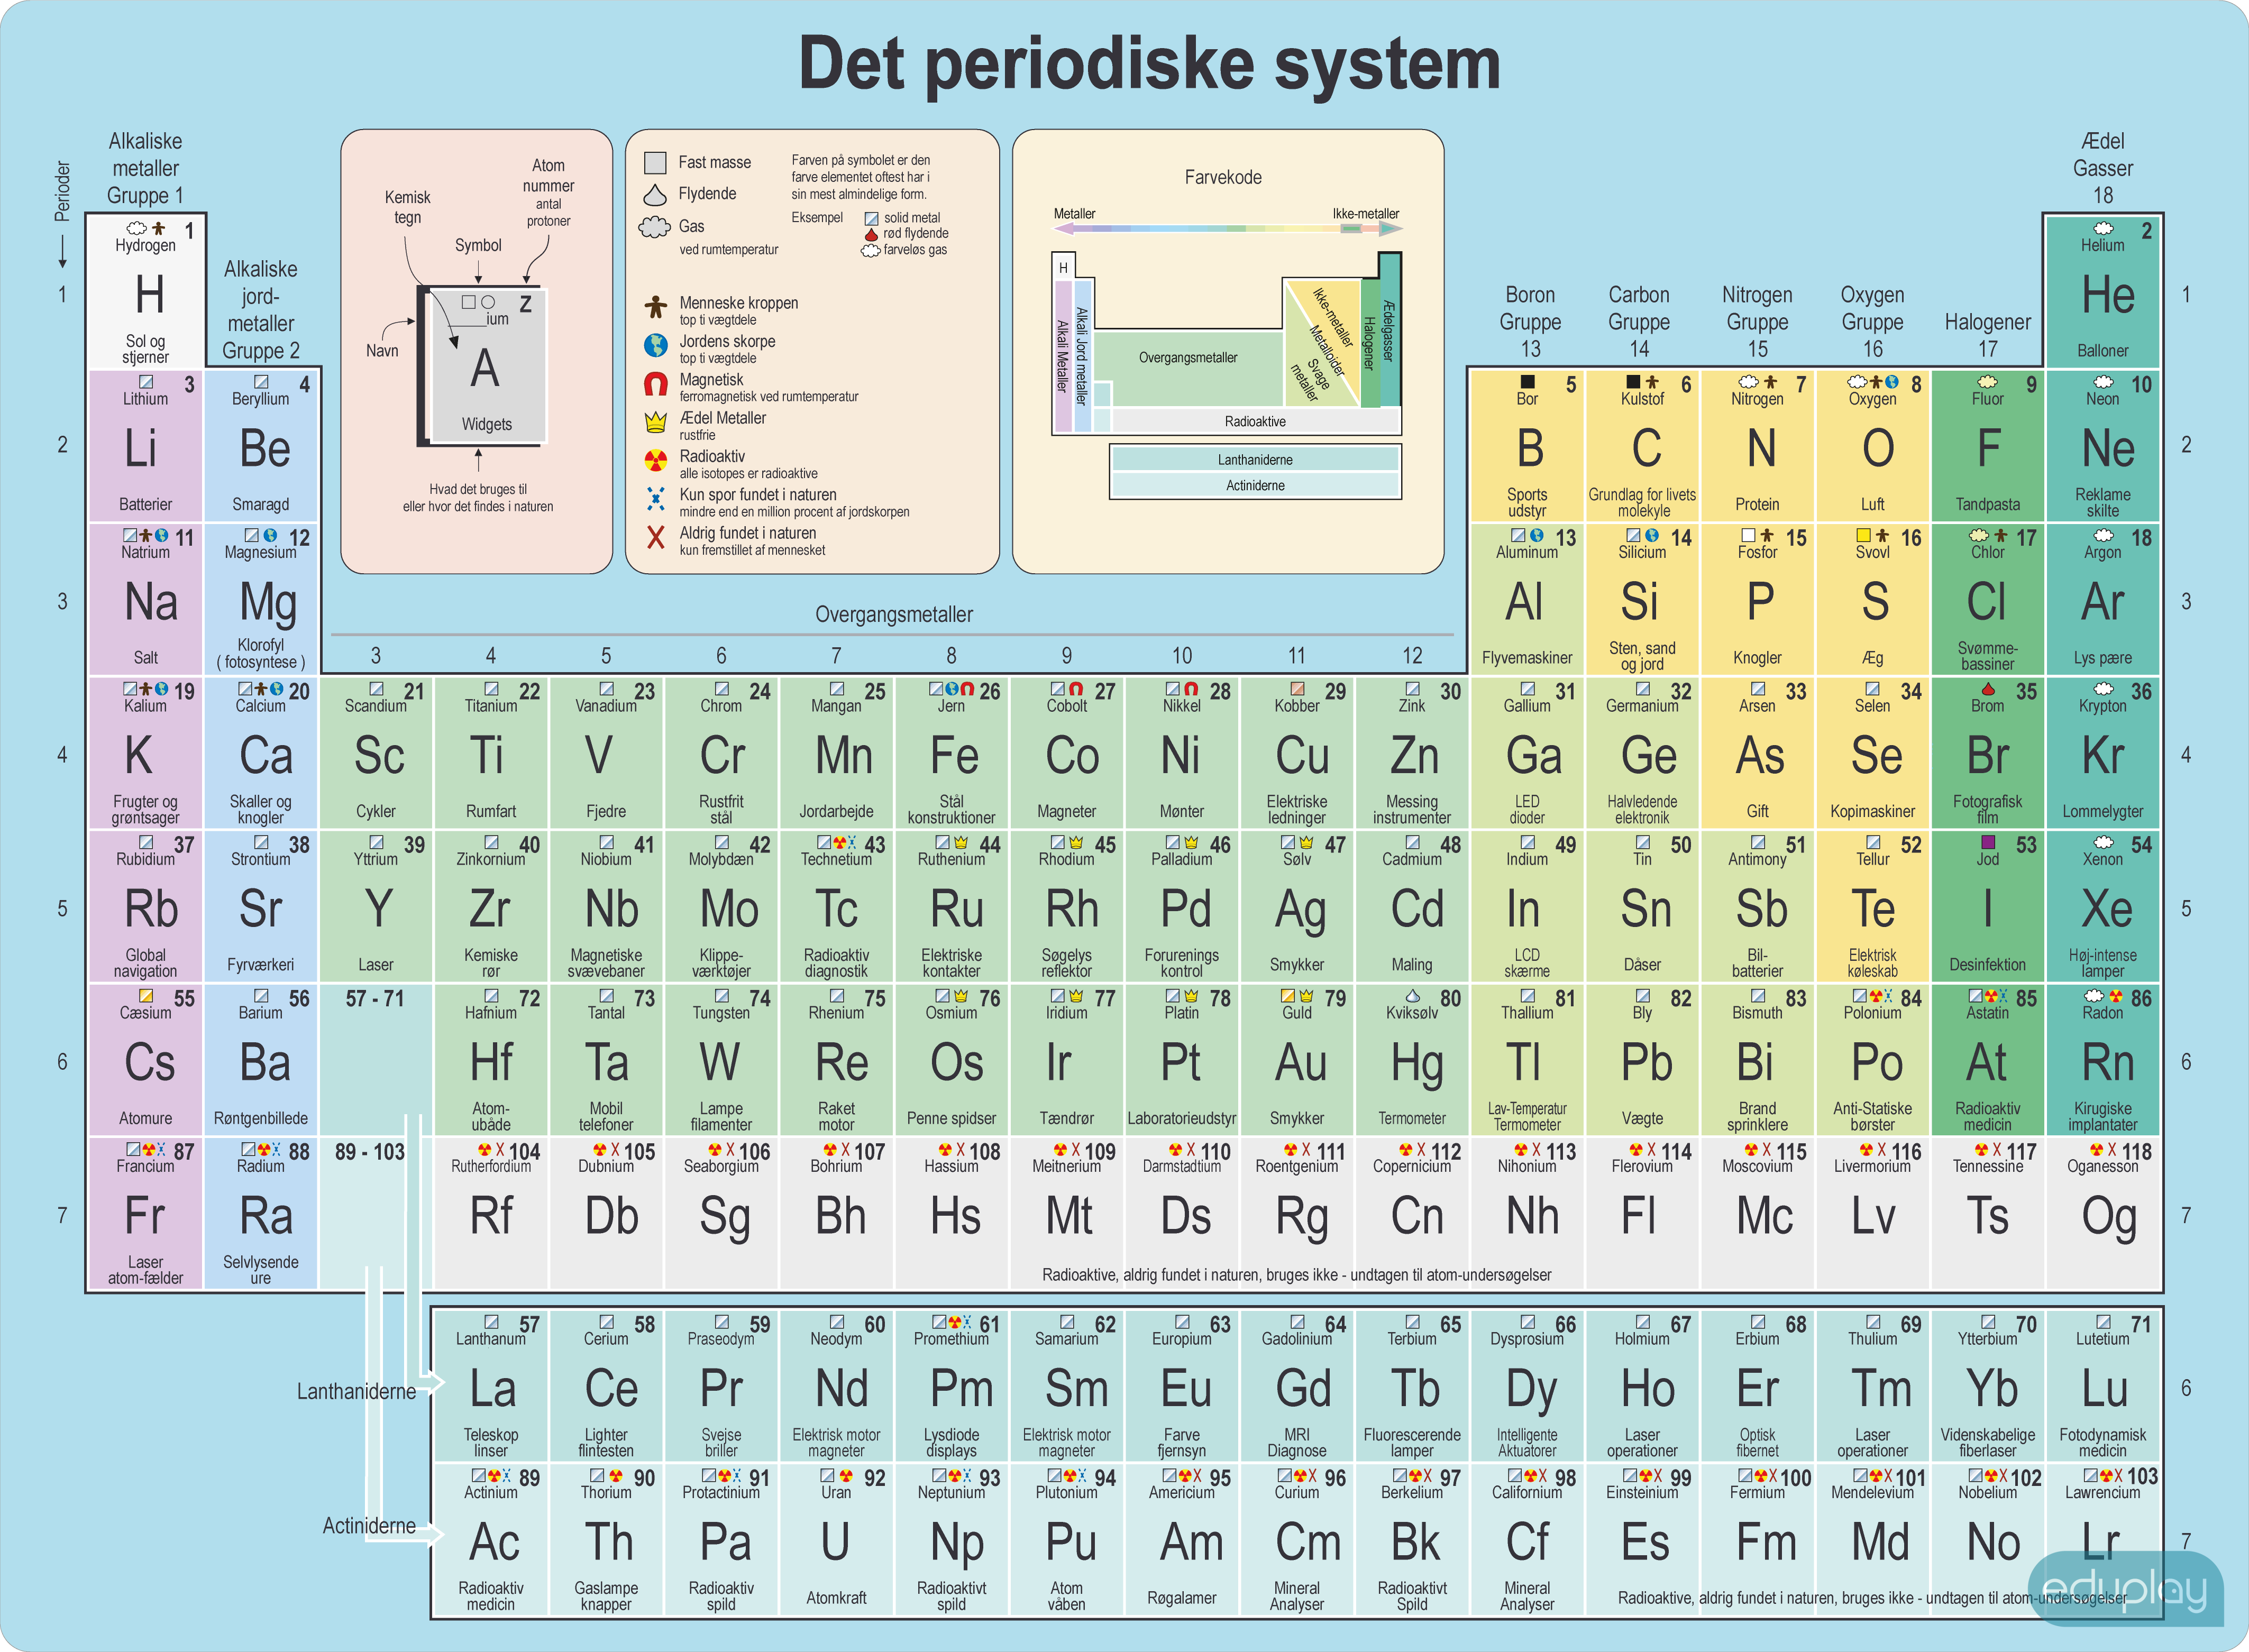 Grundstofferne - Det periodiske system